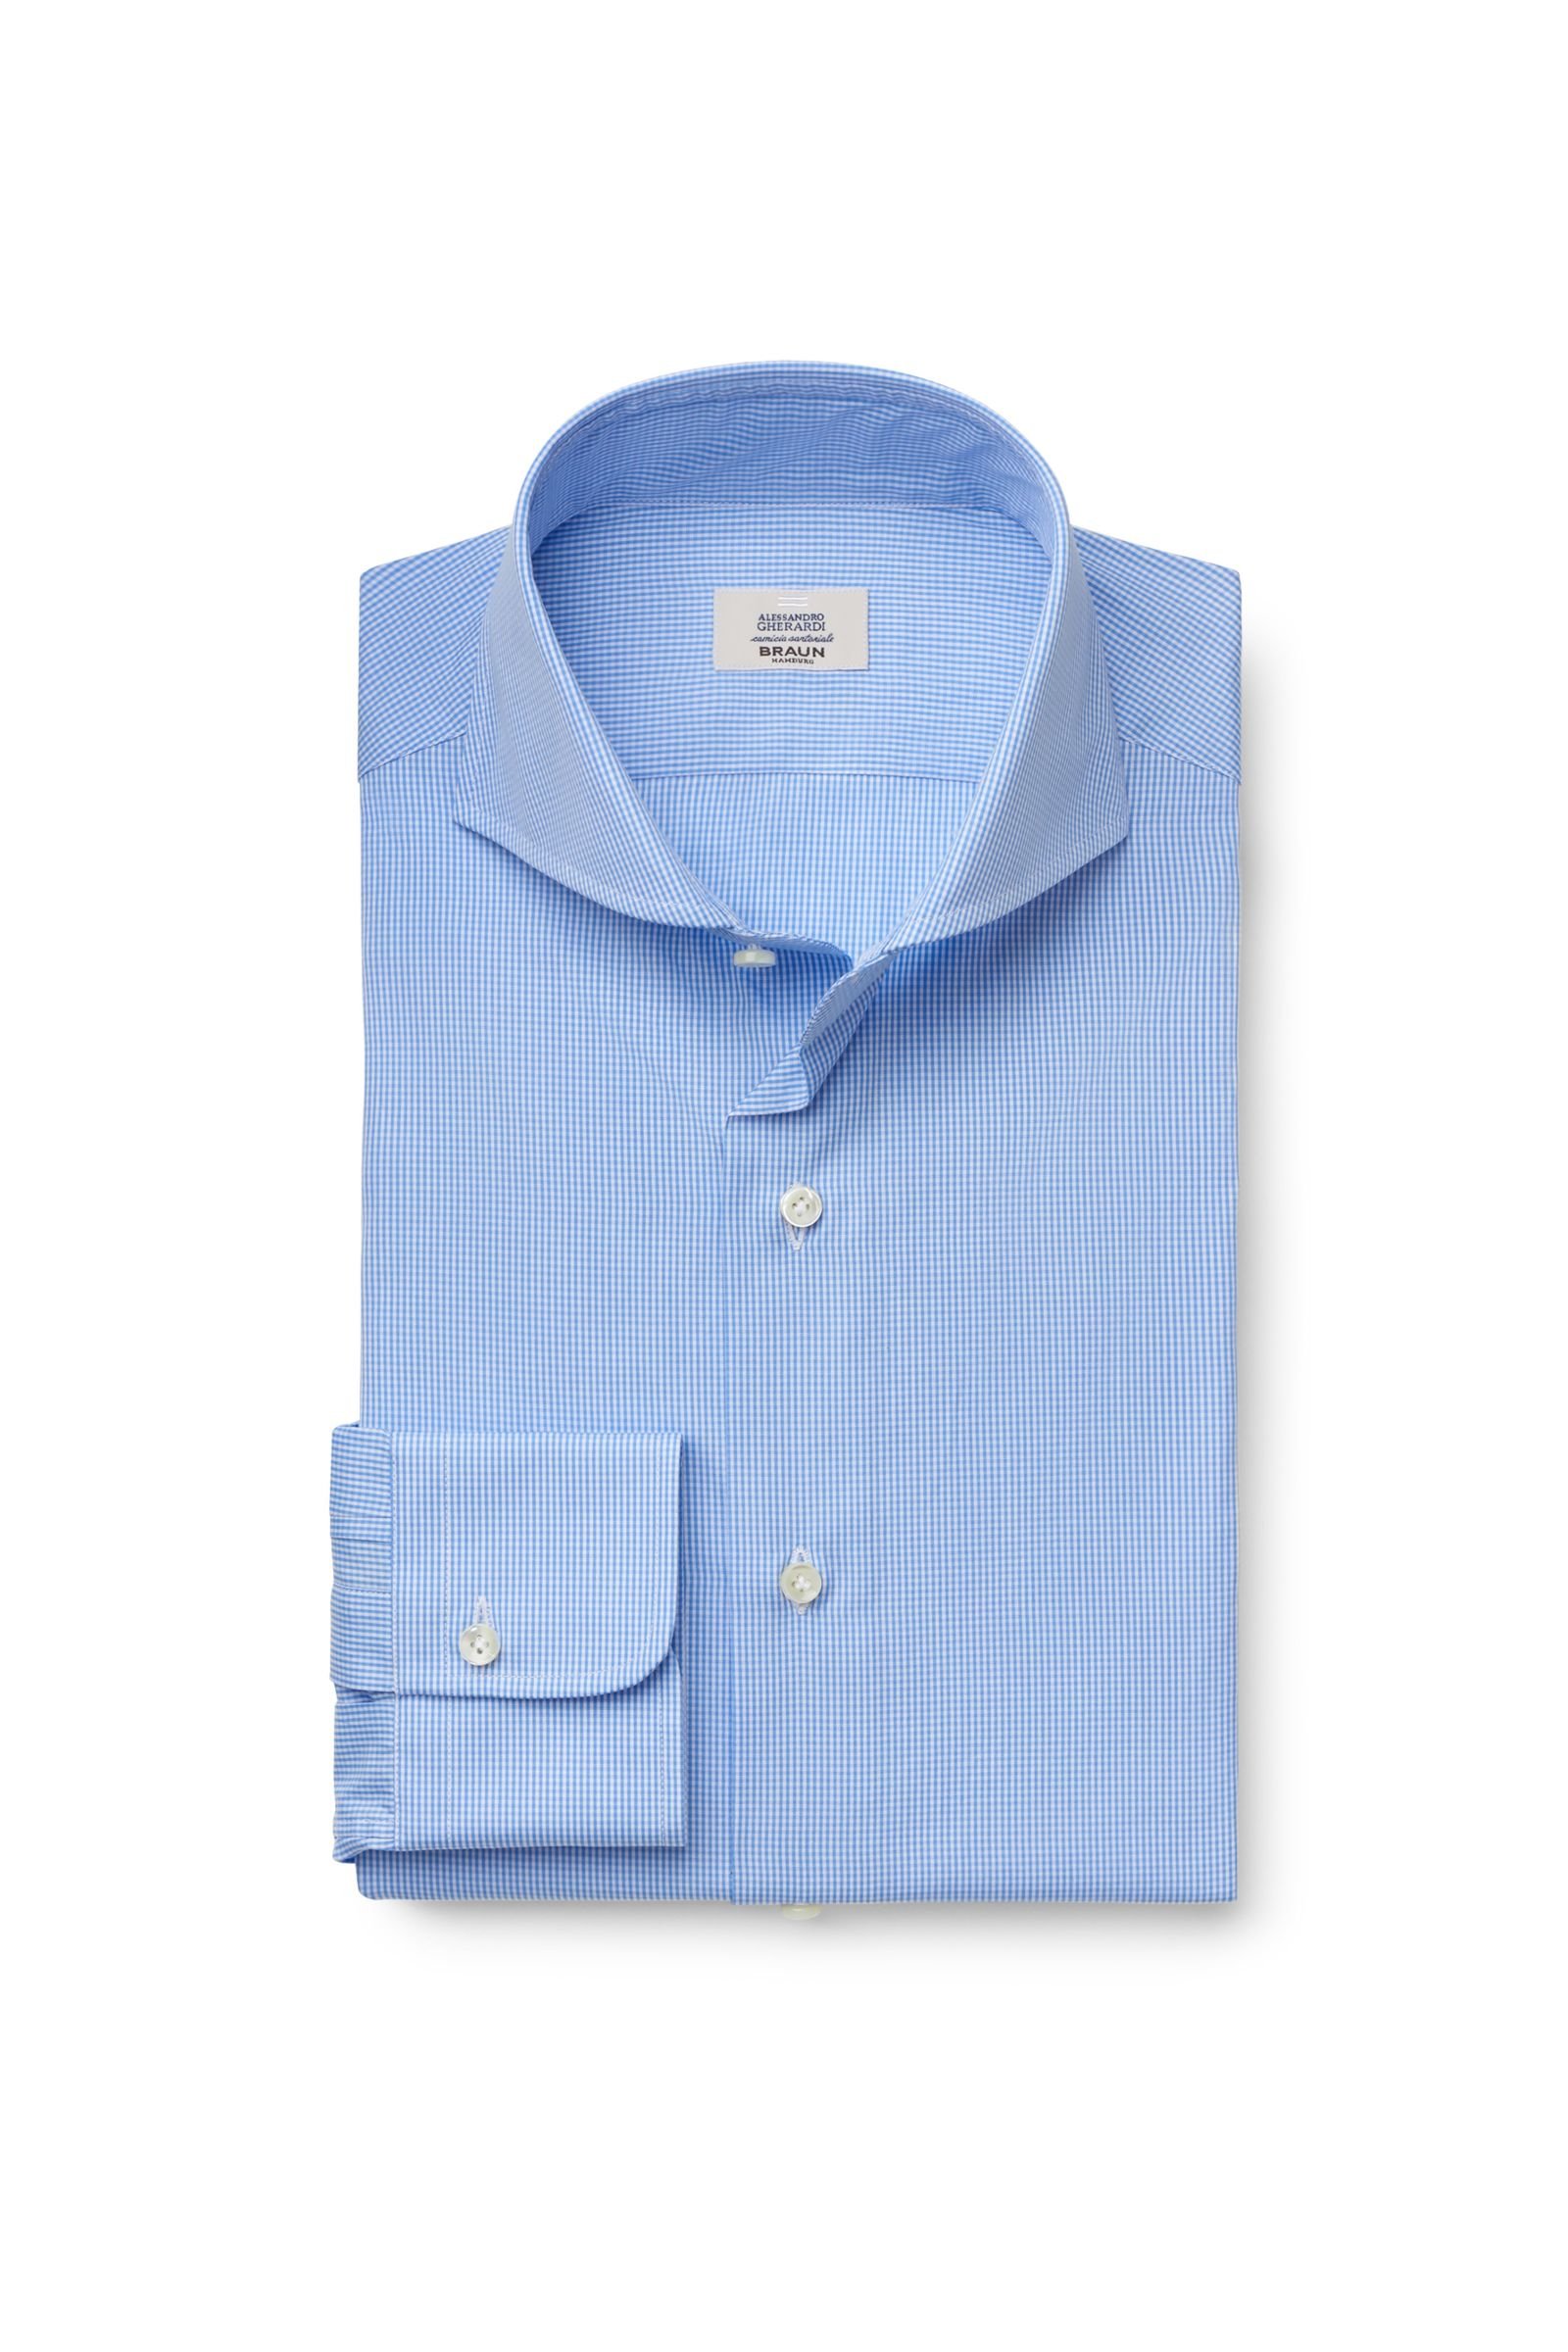 Business shirt shark collar blue checked